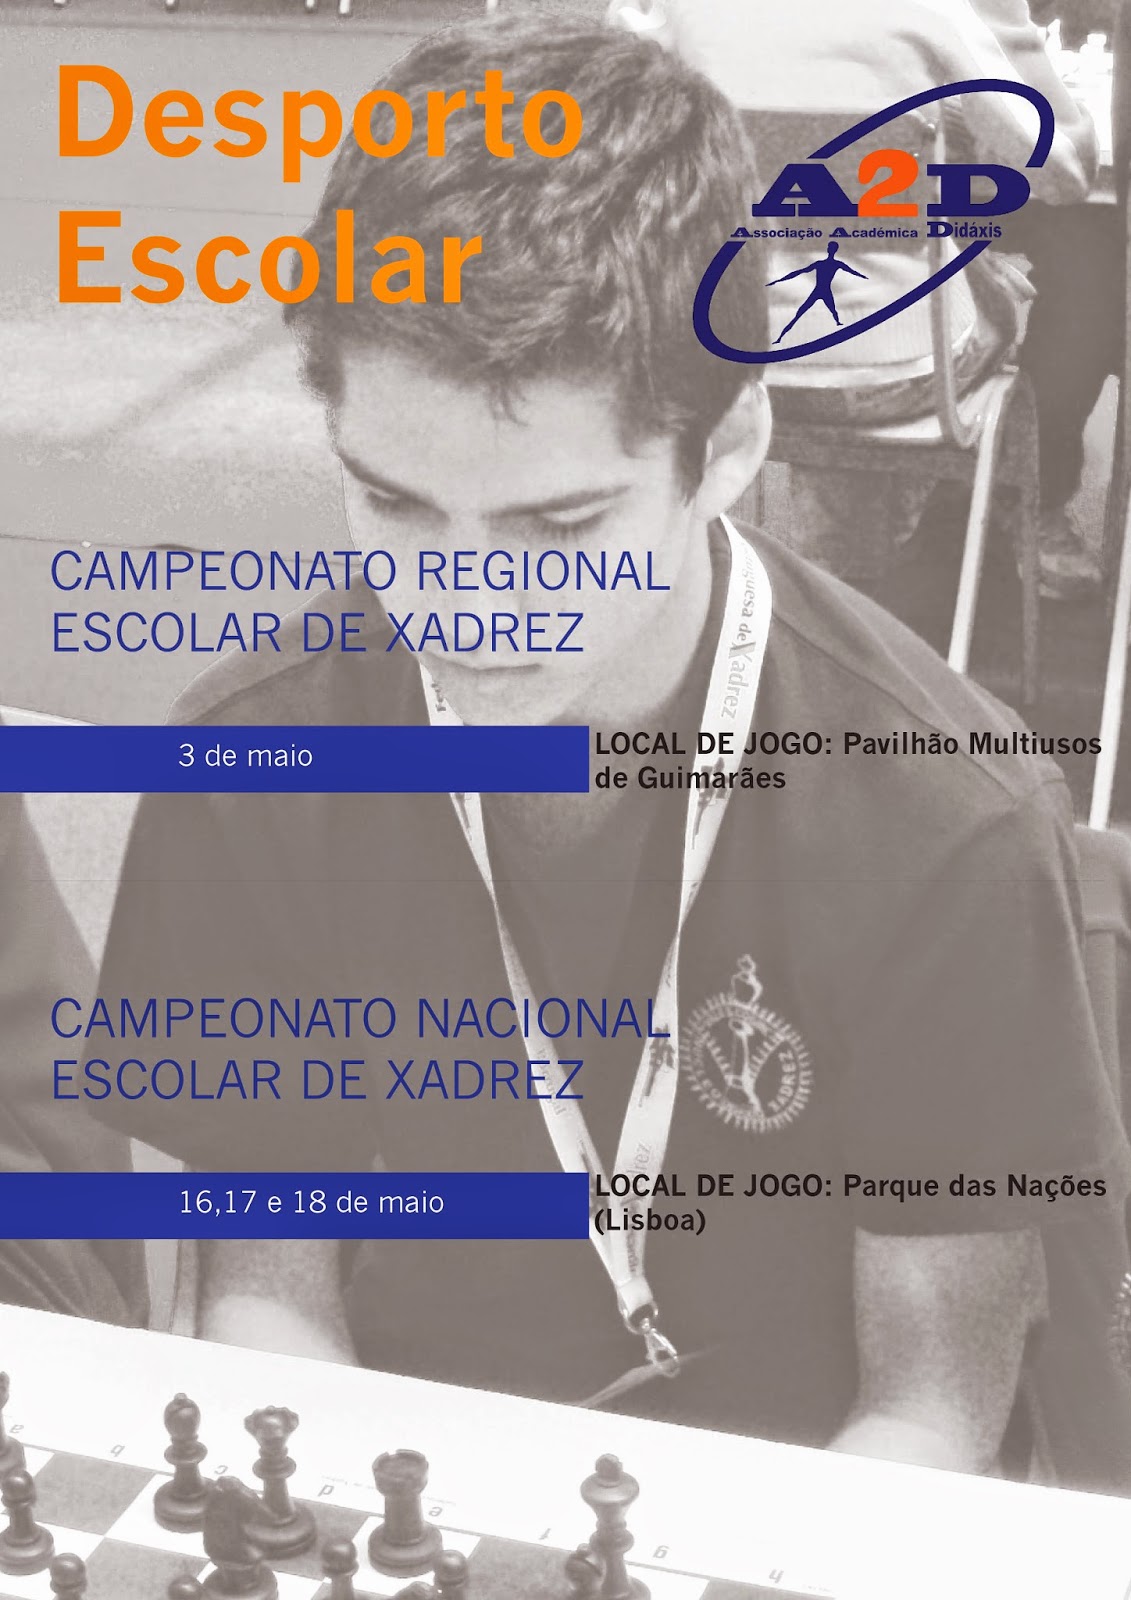 Clube Escolar de Xadrez da Associação Académica Didáxis: janeiro 2014